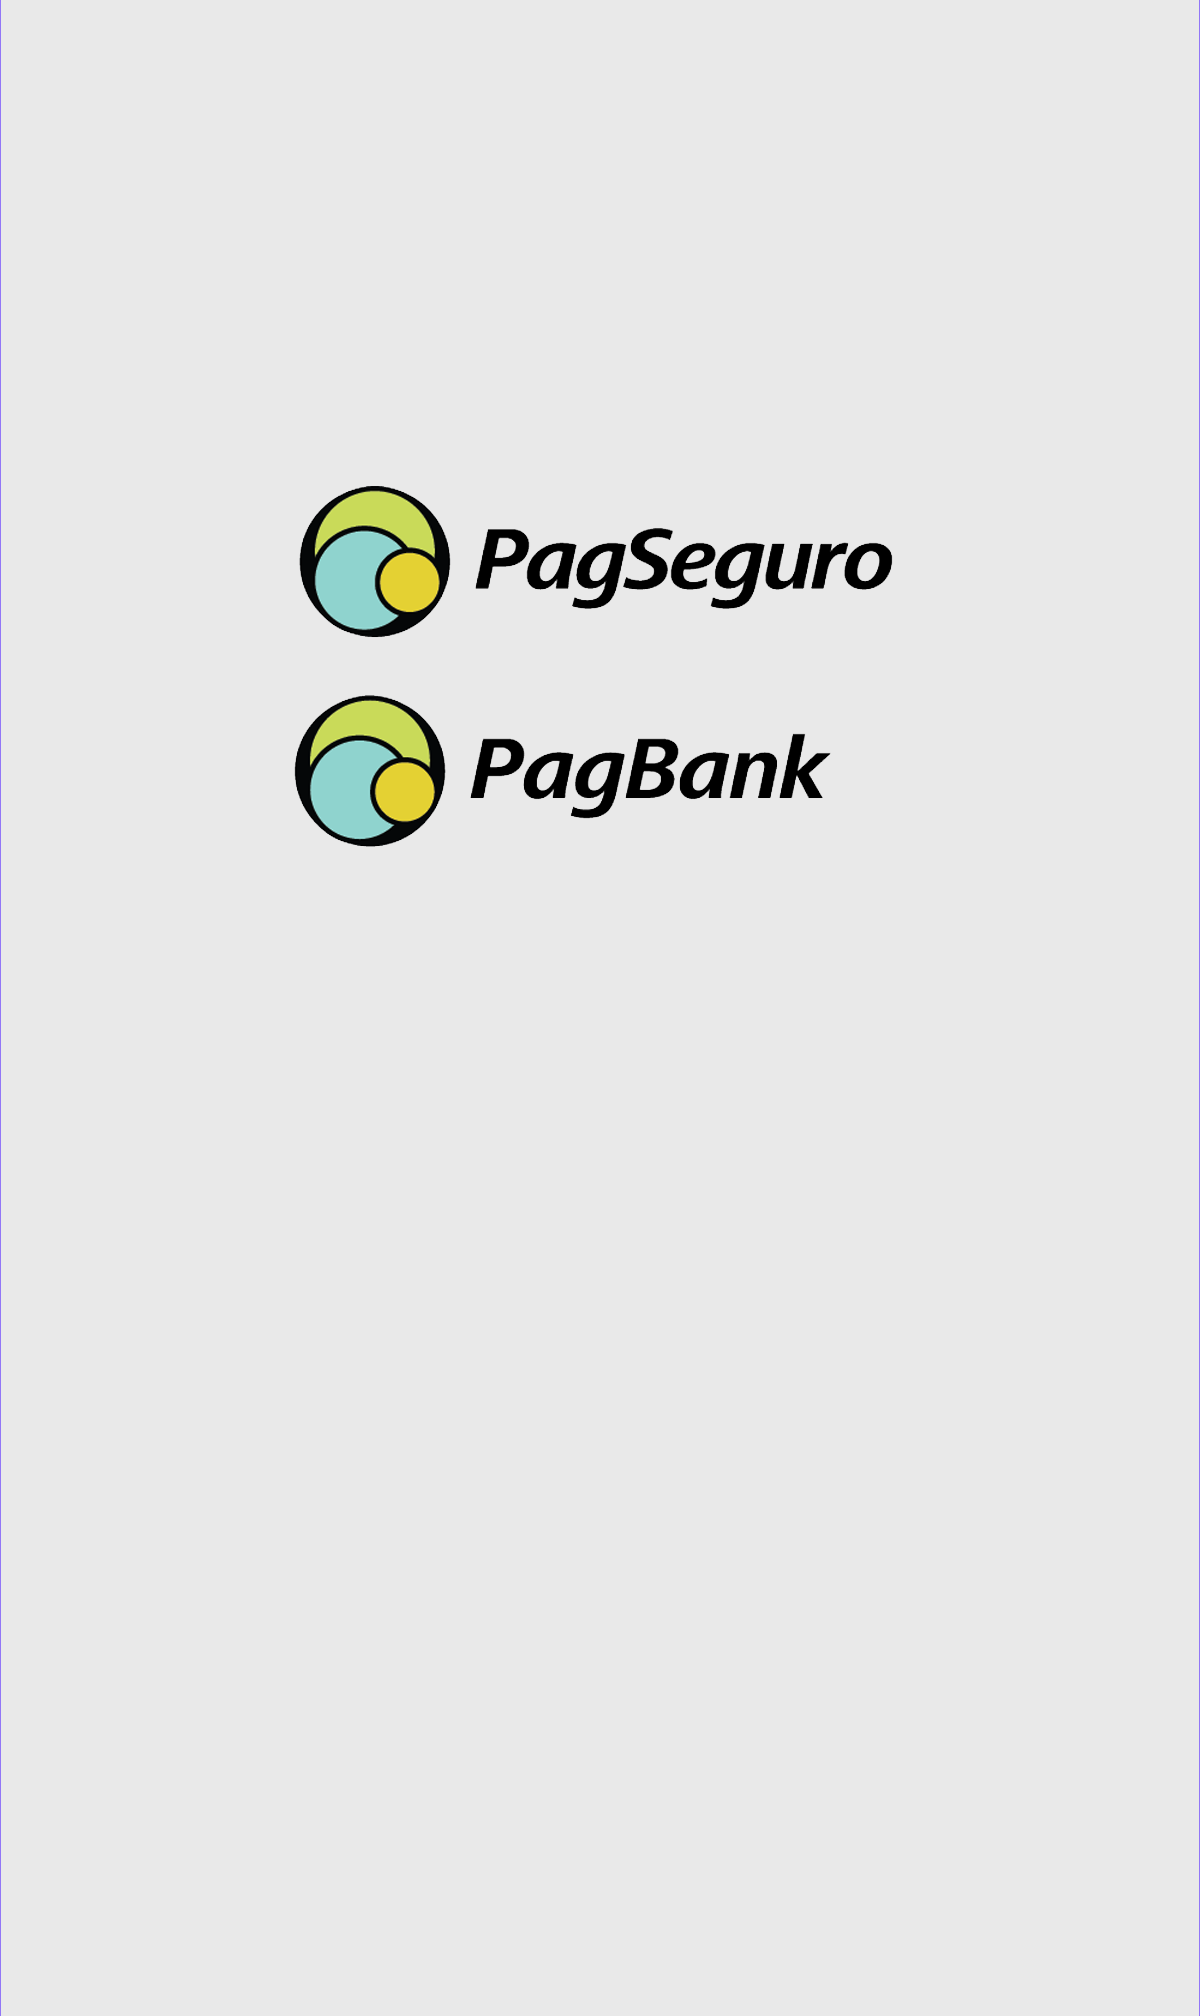 logos_pag2